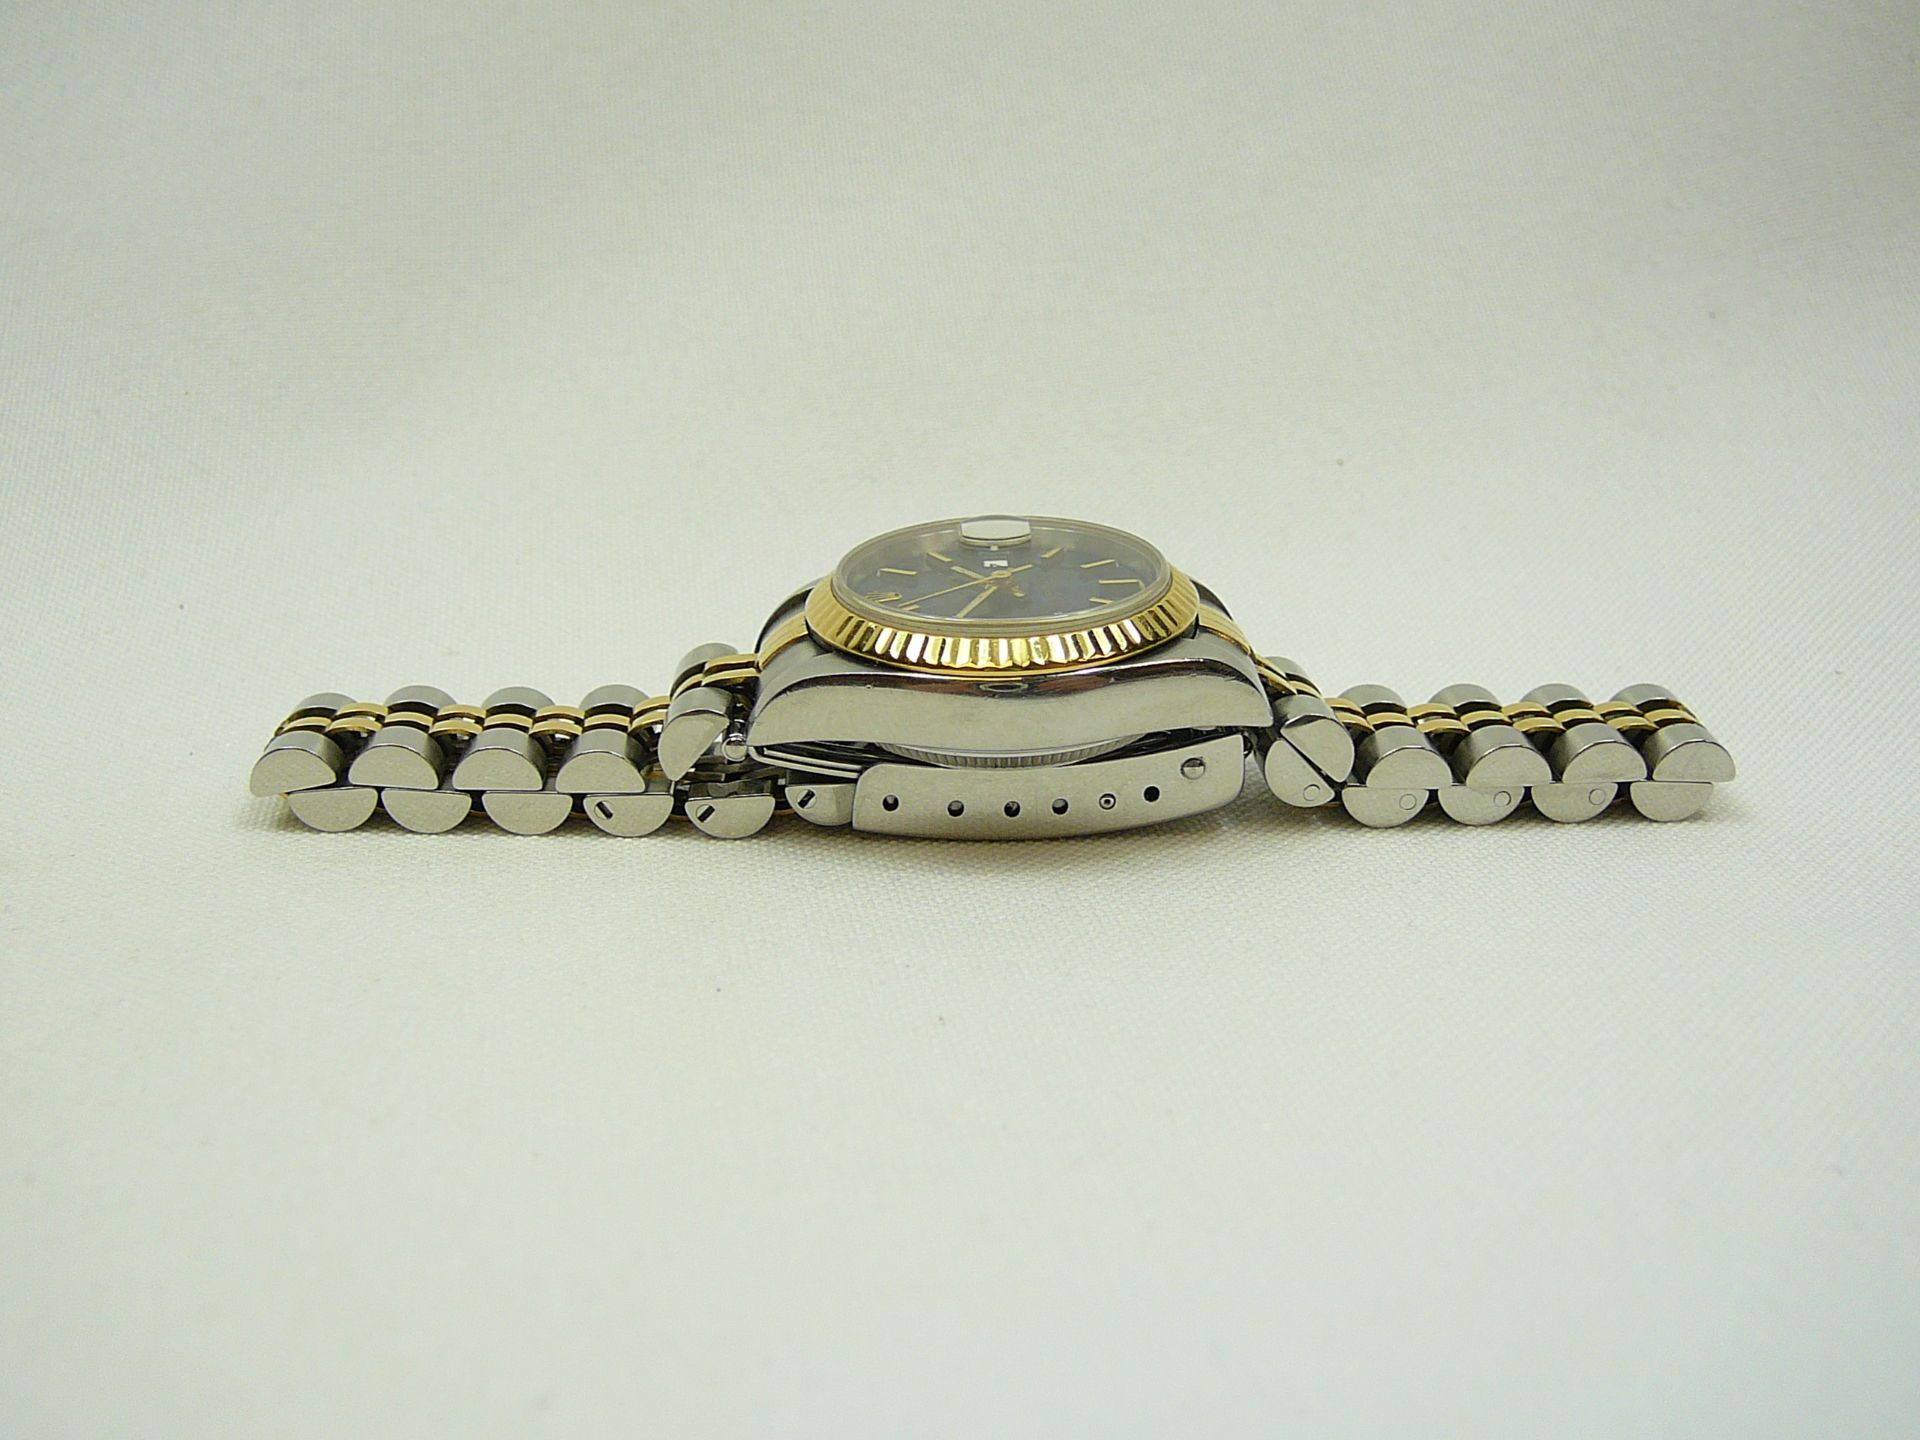 Ladies Rolex Wrist Watch - Image 4 of 6